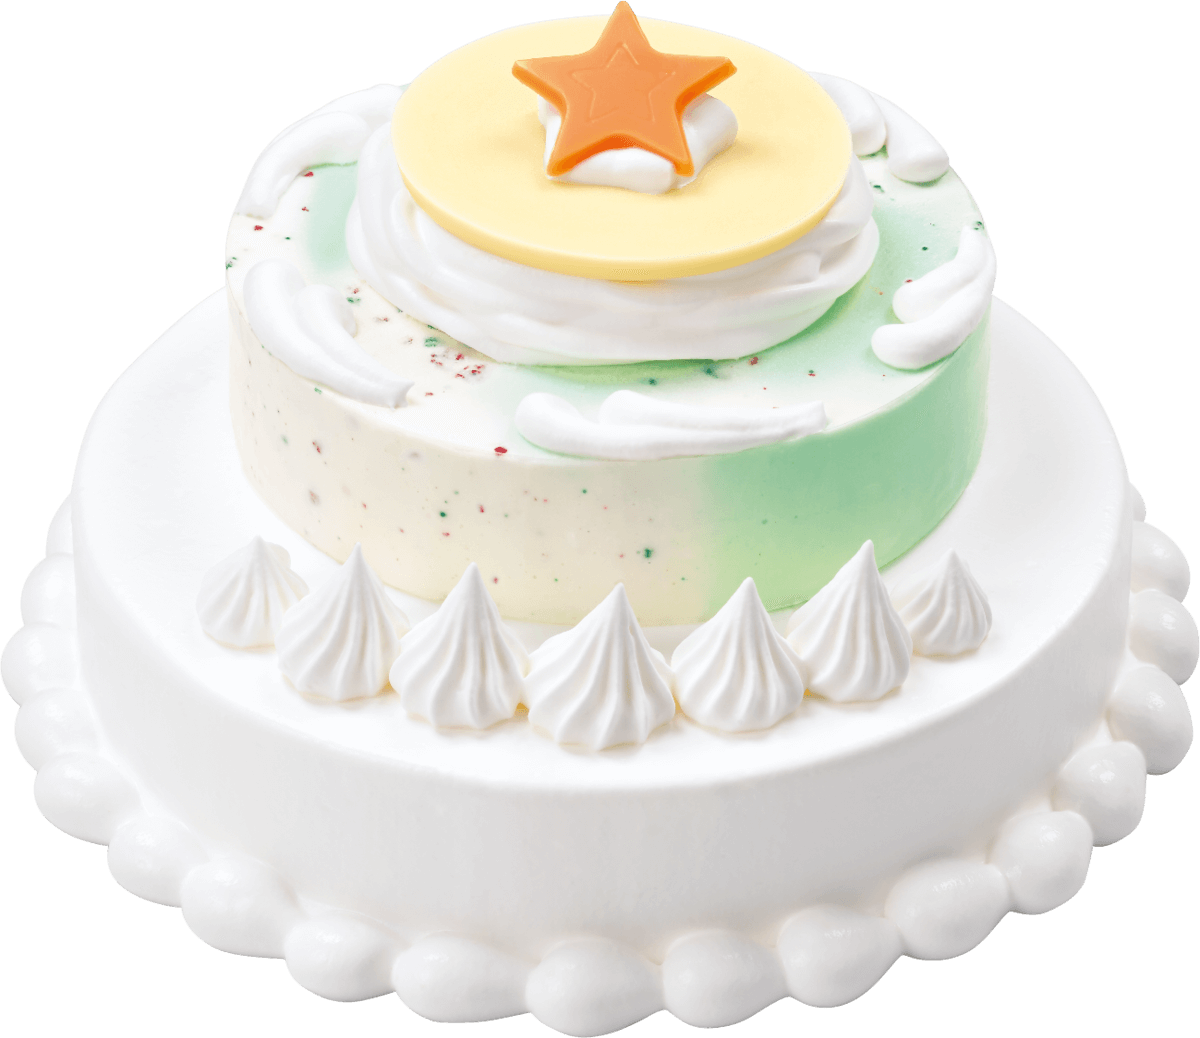 サーティワンに3500円の数量限定 スペシャルケーキ 爆誕 買いたくなるカワイイ仕掛けが満載